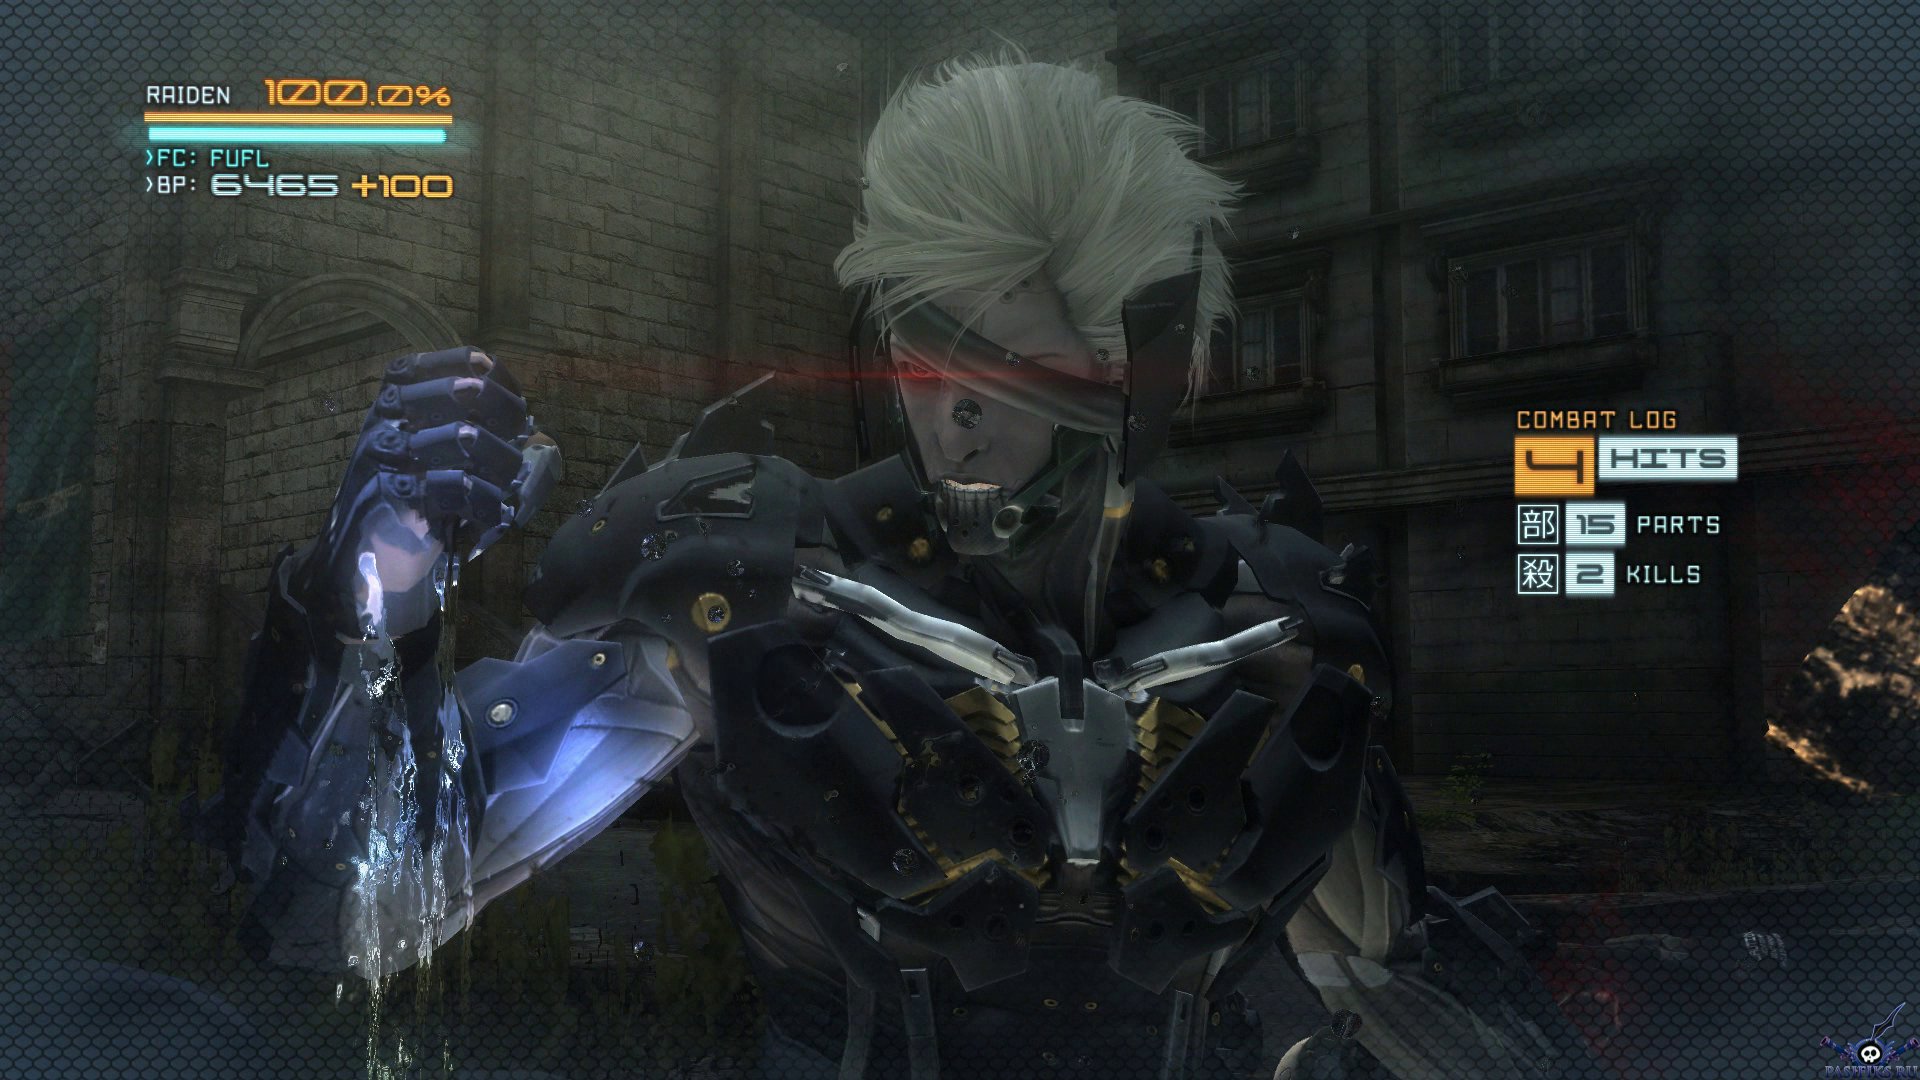 metal-gear-rising-revengeance-screenshot